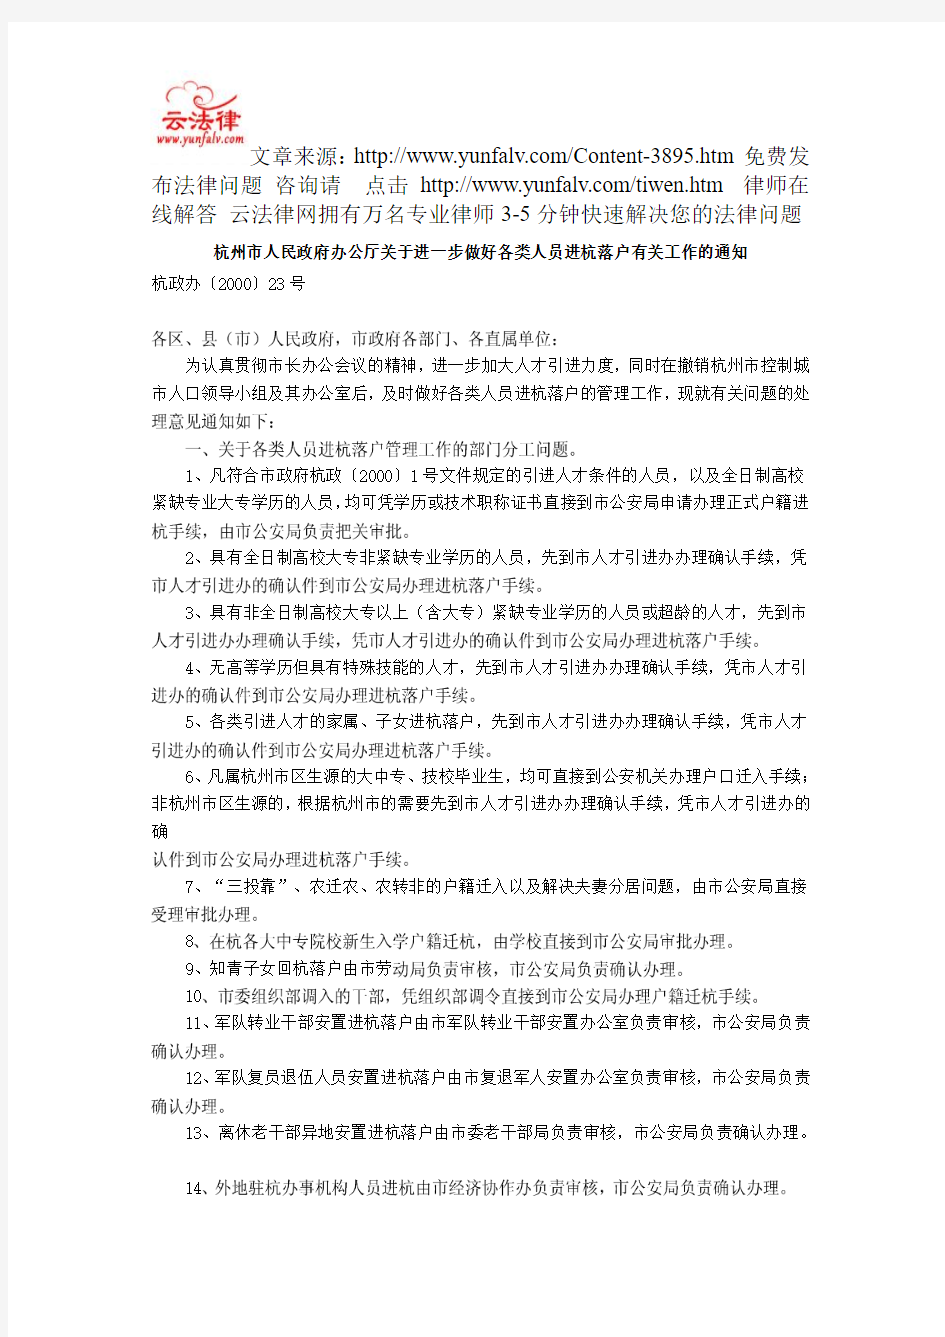 杭州市人民政府办公厅关于进一步做好各类人员进杭落户有关工作的通知